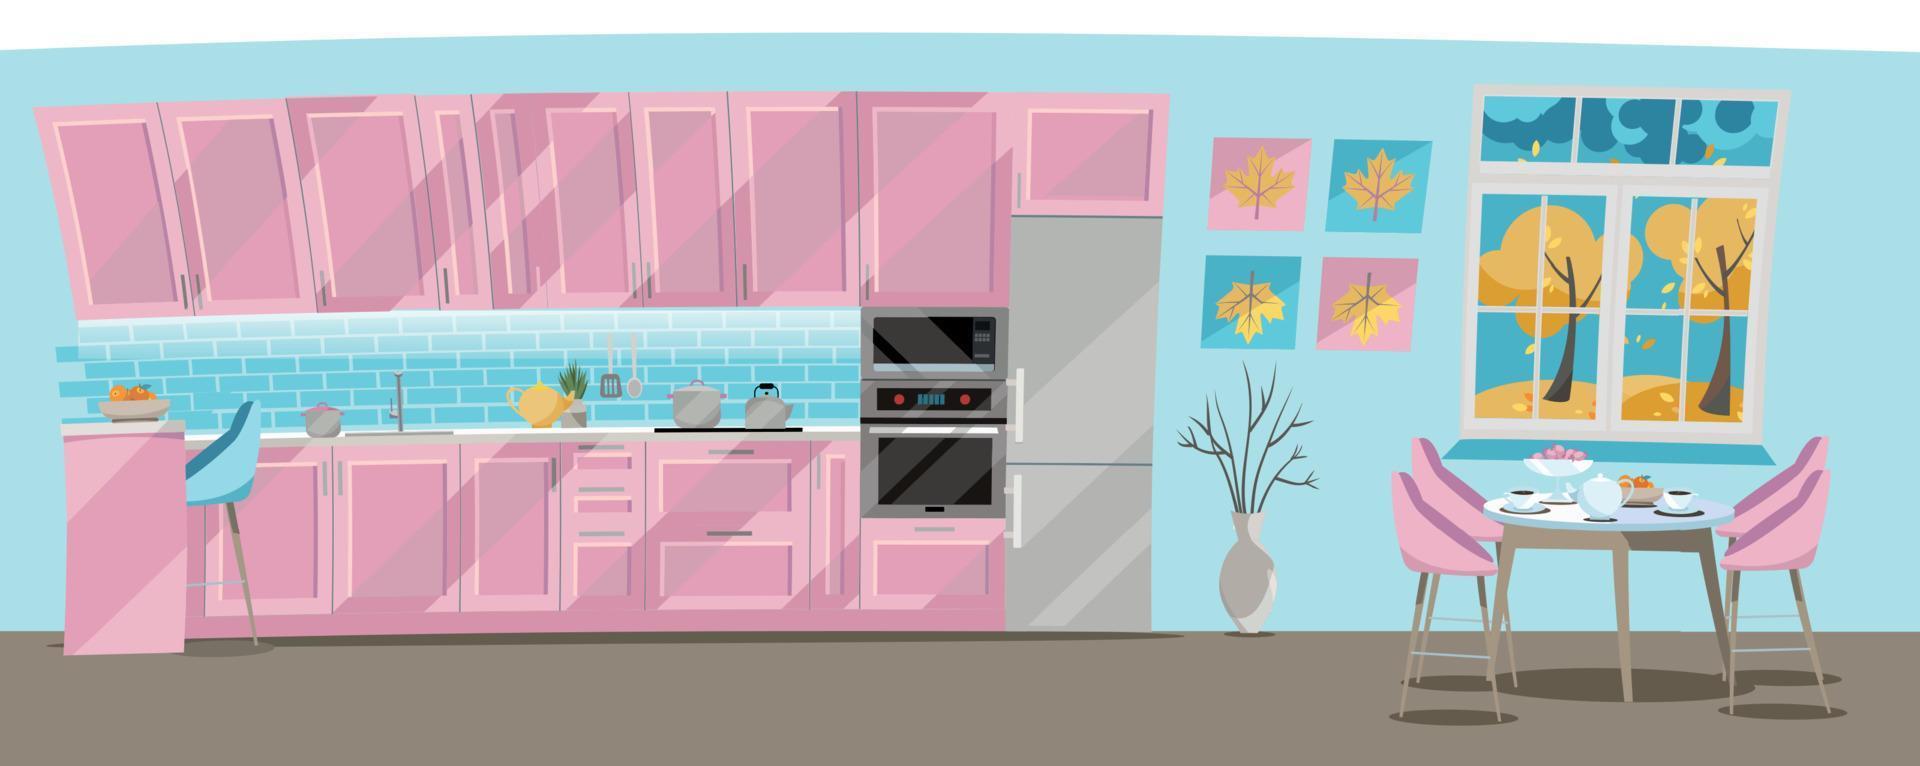 ensemble de cuisine à illustration plate de couleur rose sur fond bleu avec accessoires de cuisine - casseroles, bouilloire, réfrigérateur, four, micro-ondes. table à manger près de la fenêtre avec thé et théière. vecteur